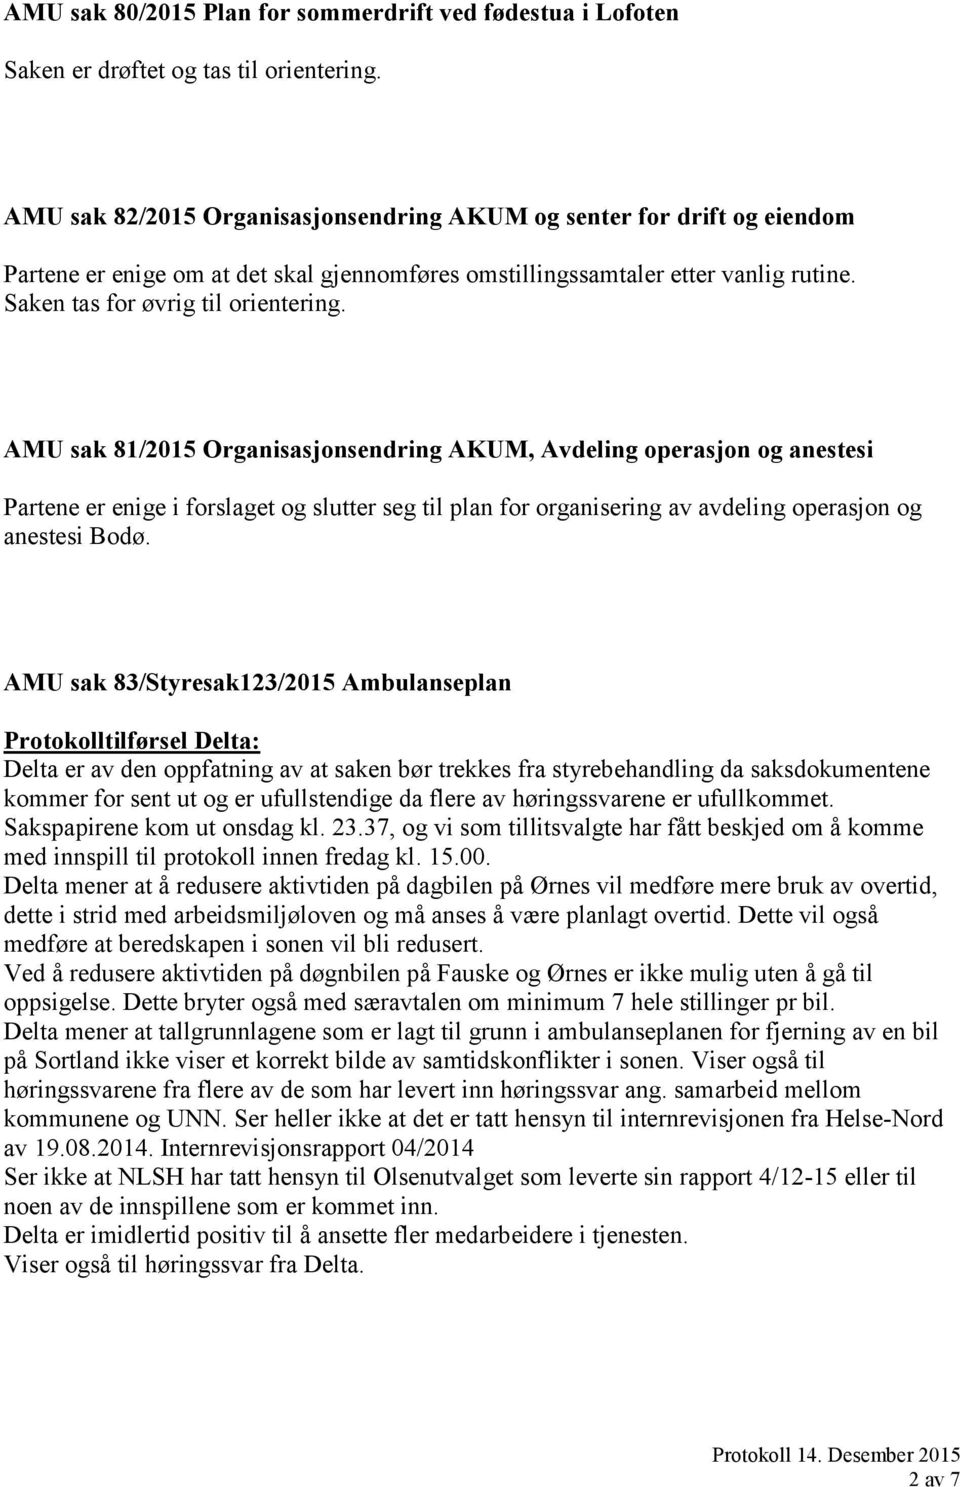 AMU sak 81/2015 Organisasjonsendring AKUM, Avdeling operasjon og anestesi Partene er enige i forslaget og slutter seg til plan for organisering av avdeling operasjon og anestesi Bodø.